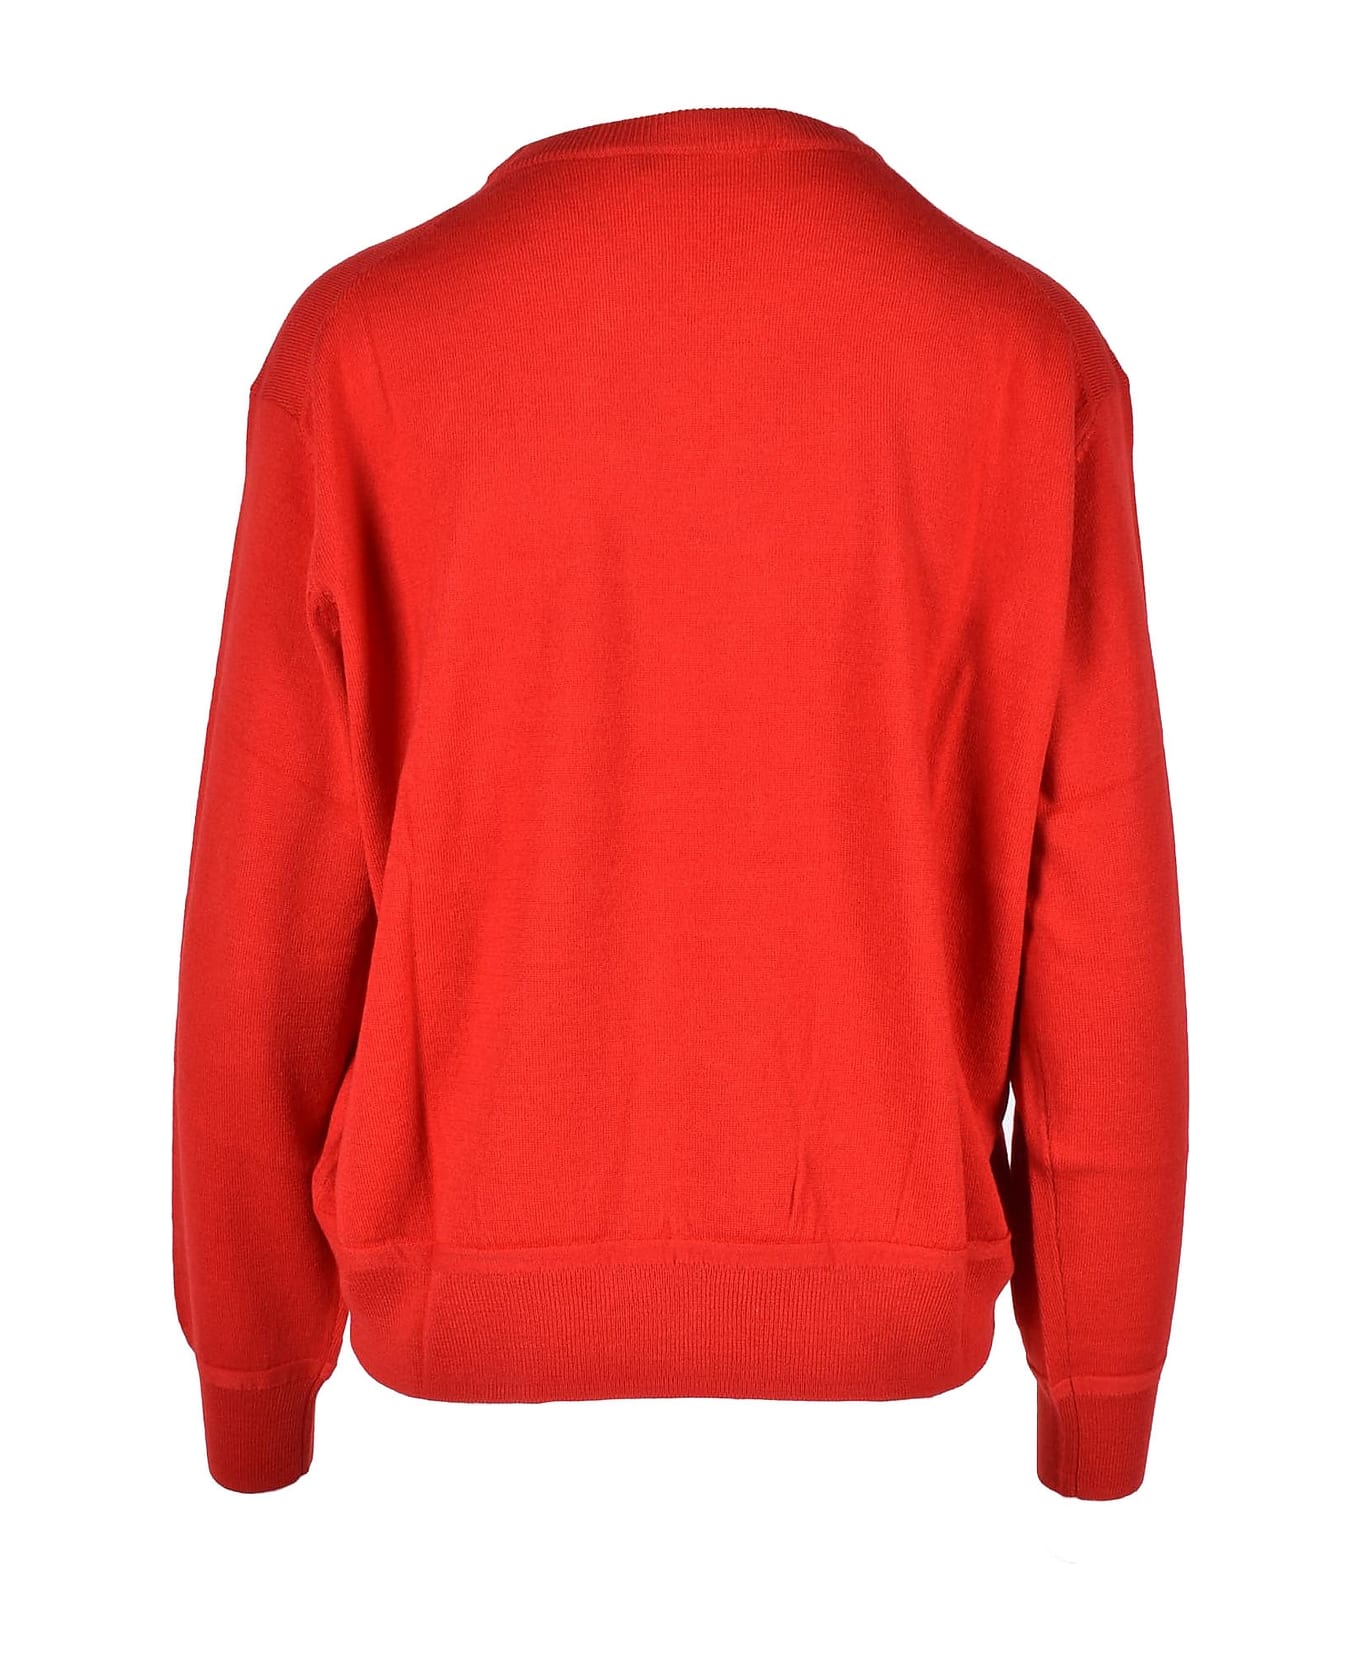 Love Moschino Women's Red Sweater - Red